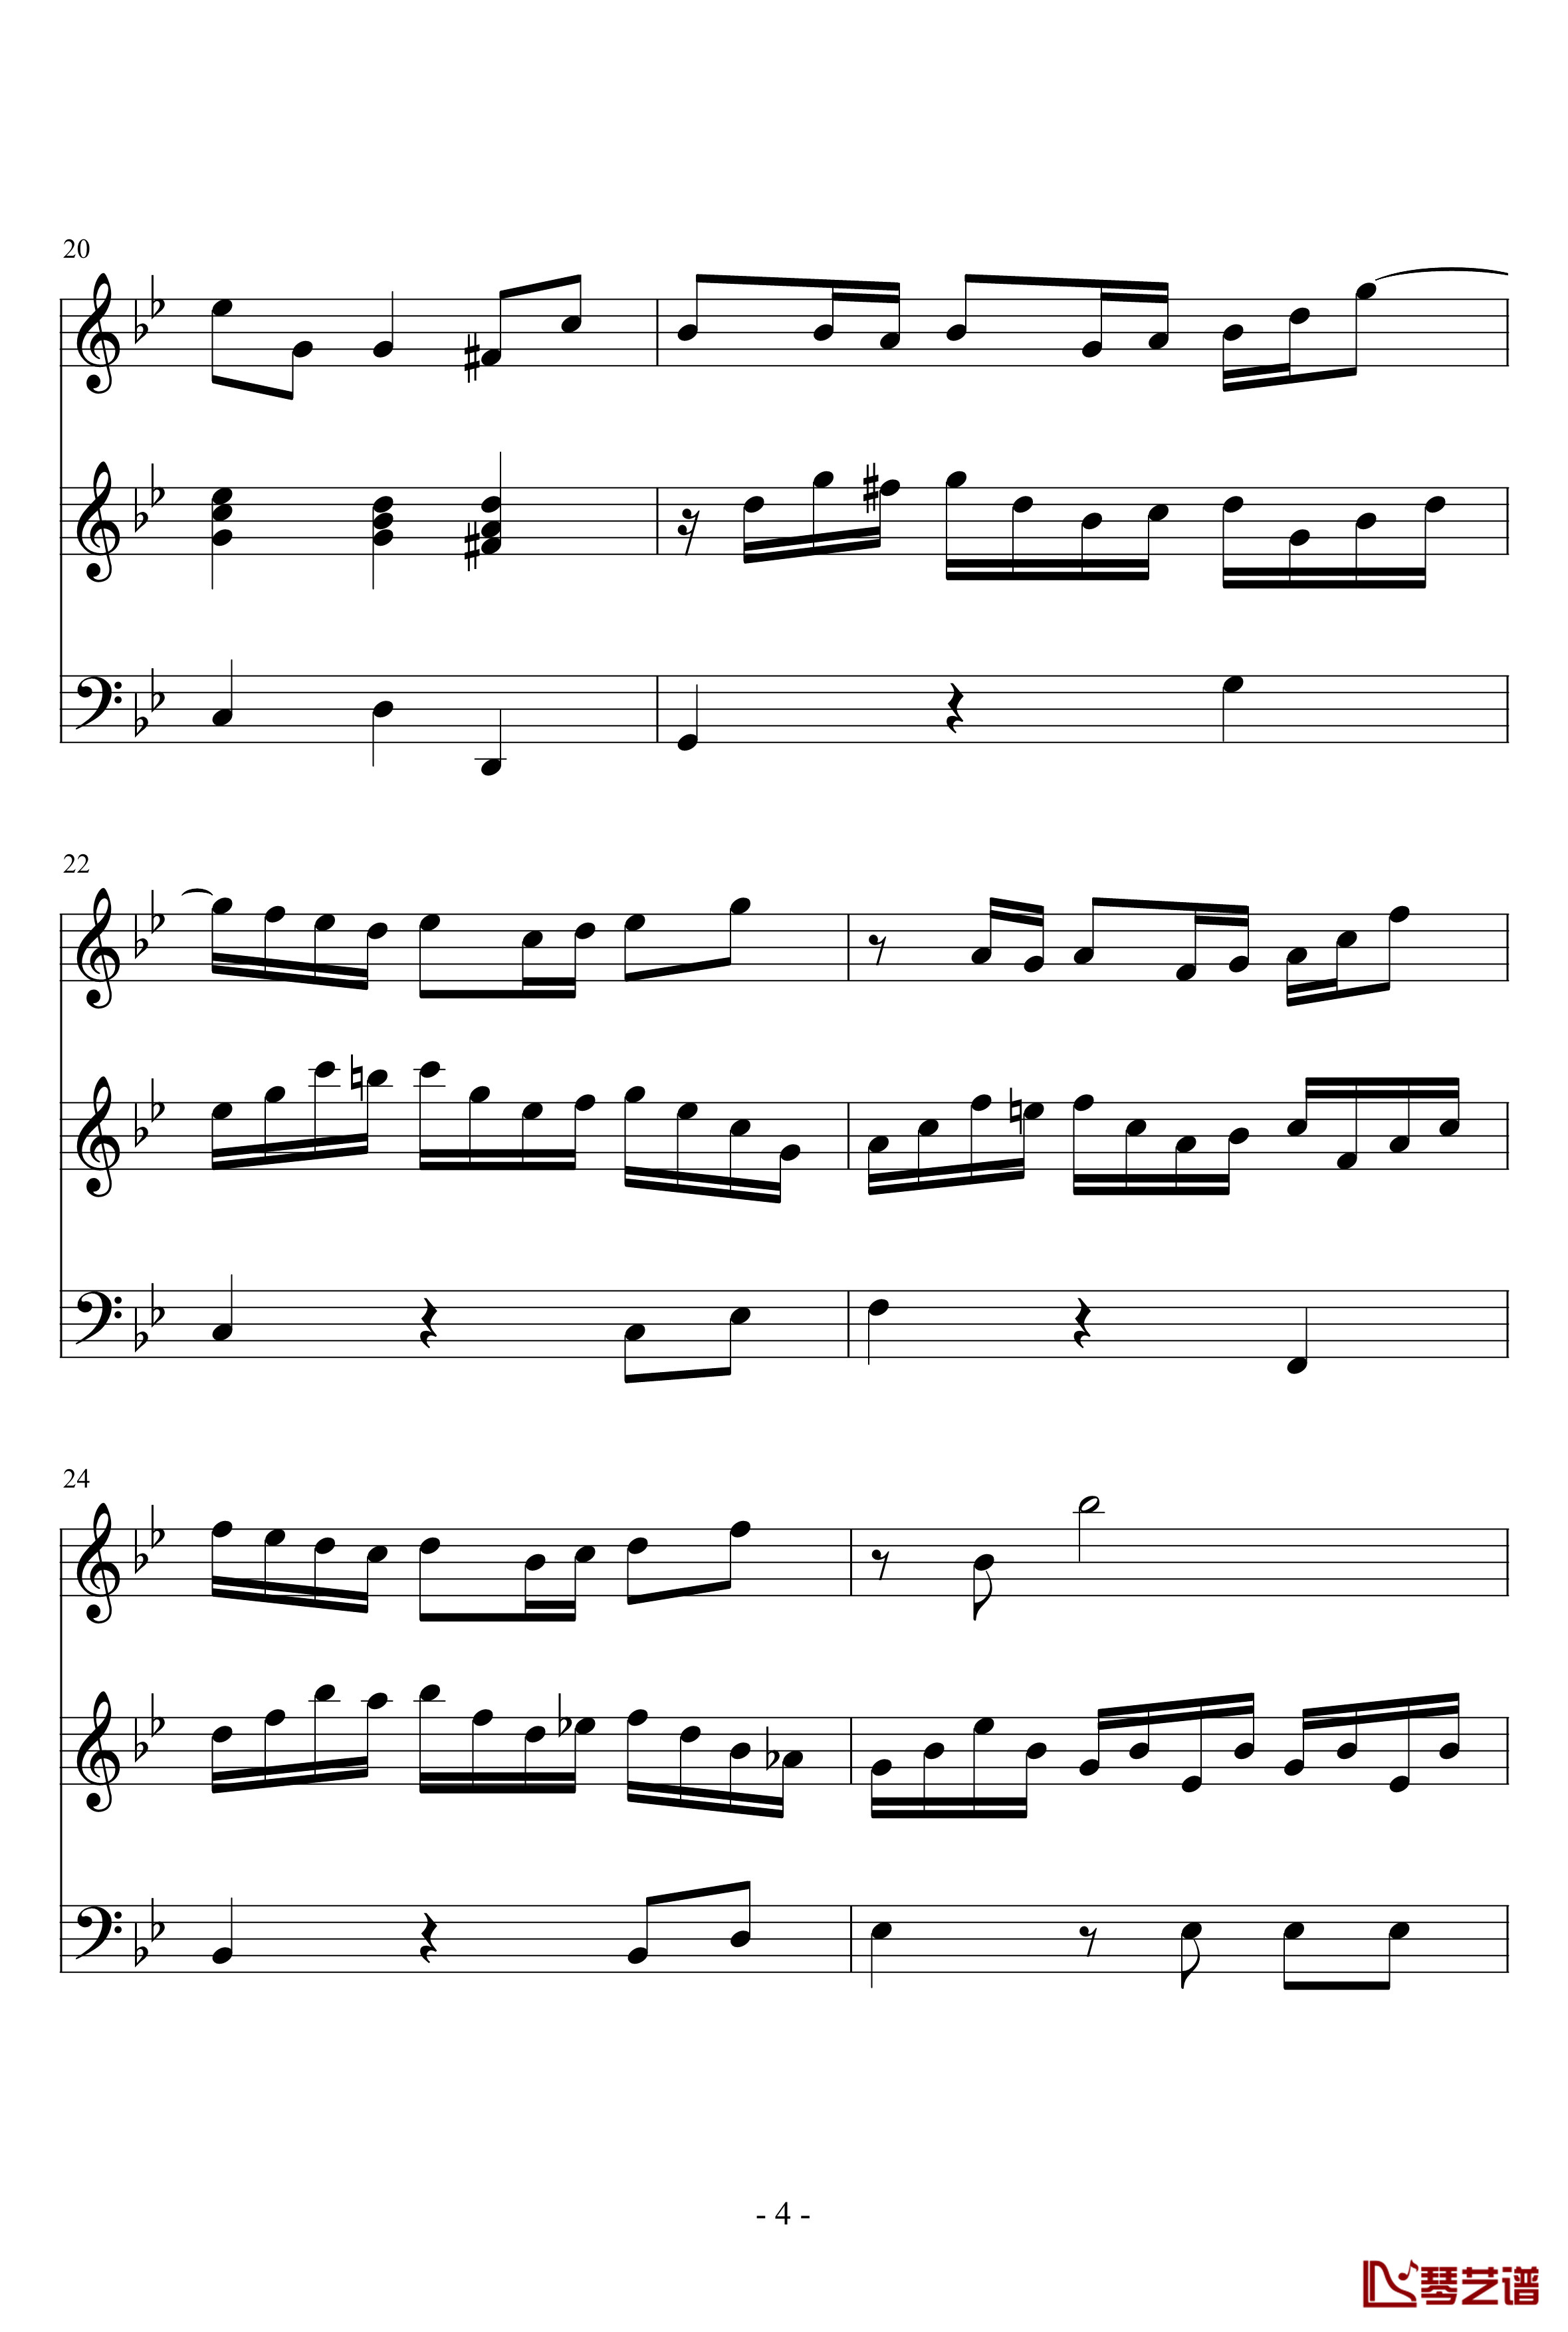 长笛与羽管键琴奏鸣曲第一乐章钢琴谱-巴赫-P.E.Bach4